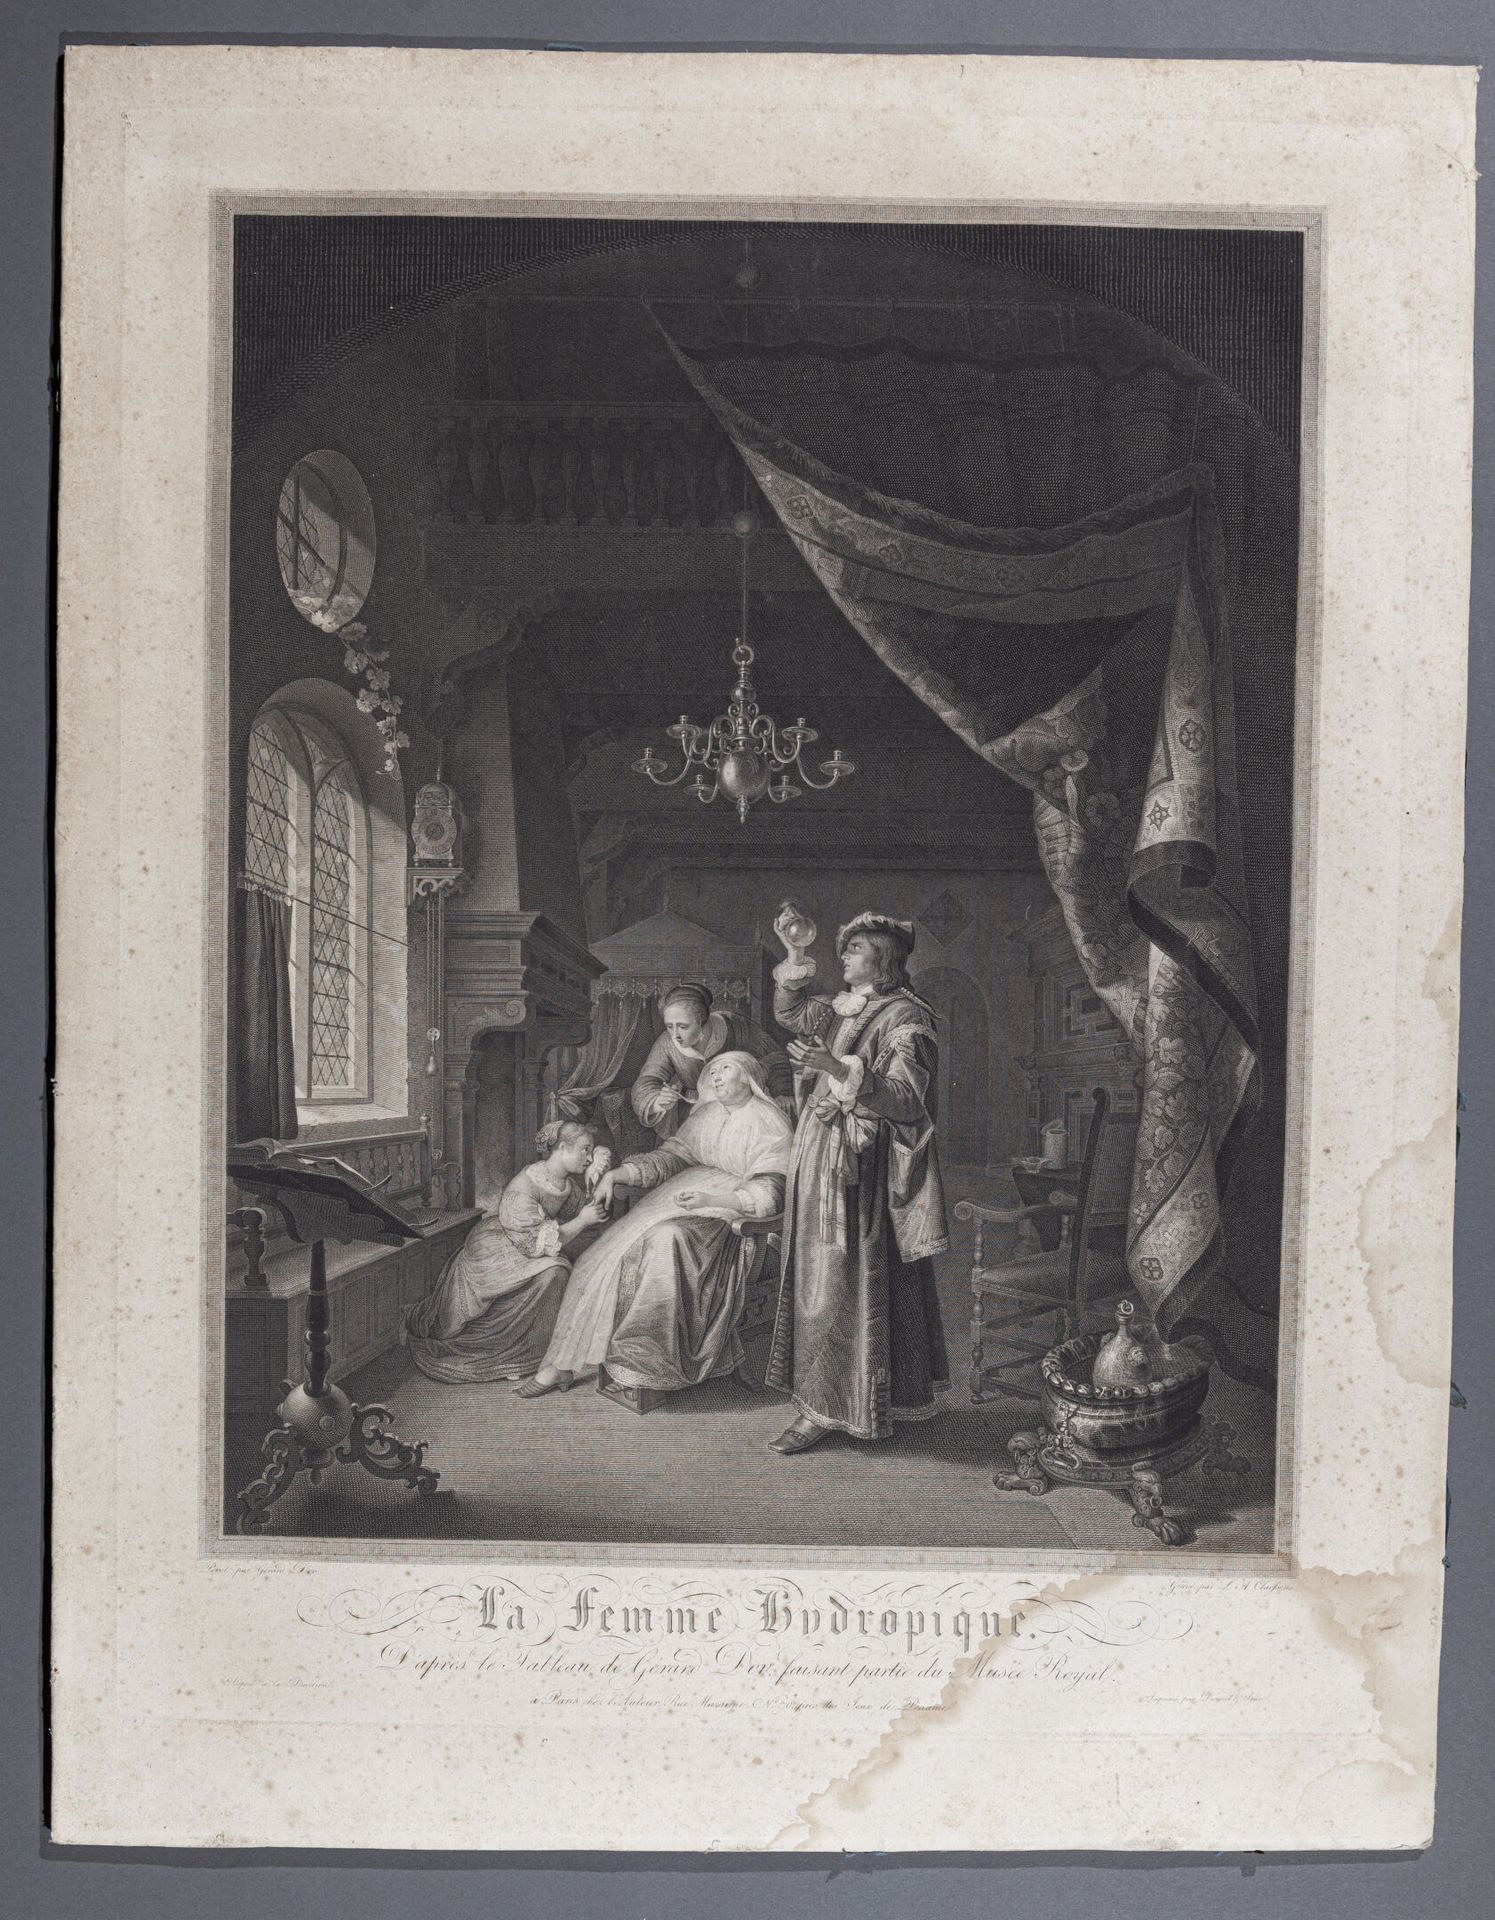 Null Según Gerrit DOW (1613-1675)

La mujer hidrópica

Grabado de Claessens

H. &hellip;